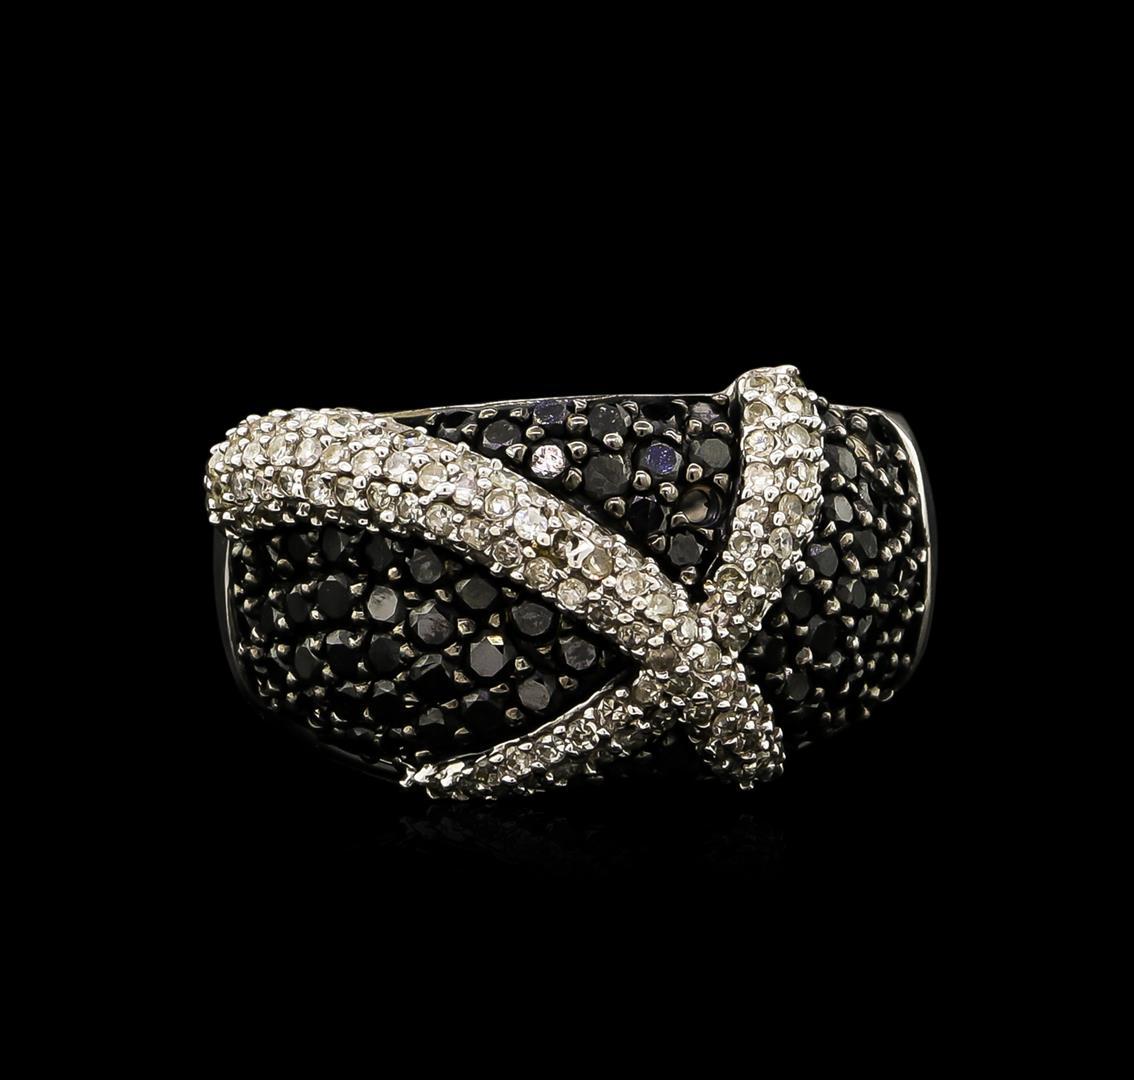 5.45 ctw Black Diamond Pendant and Earrings Set - 14KT White Gold